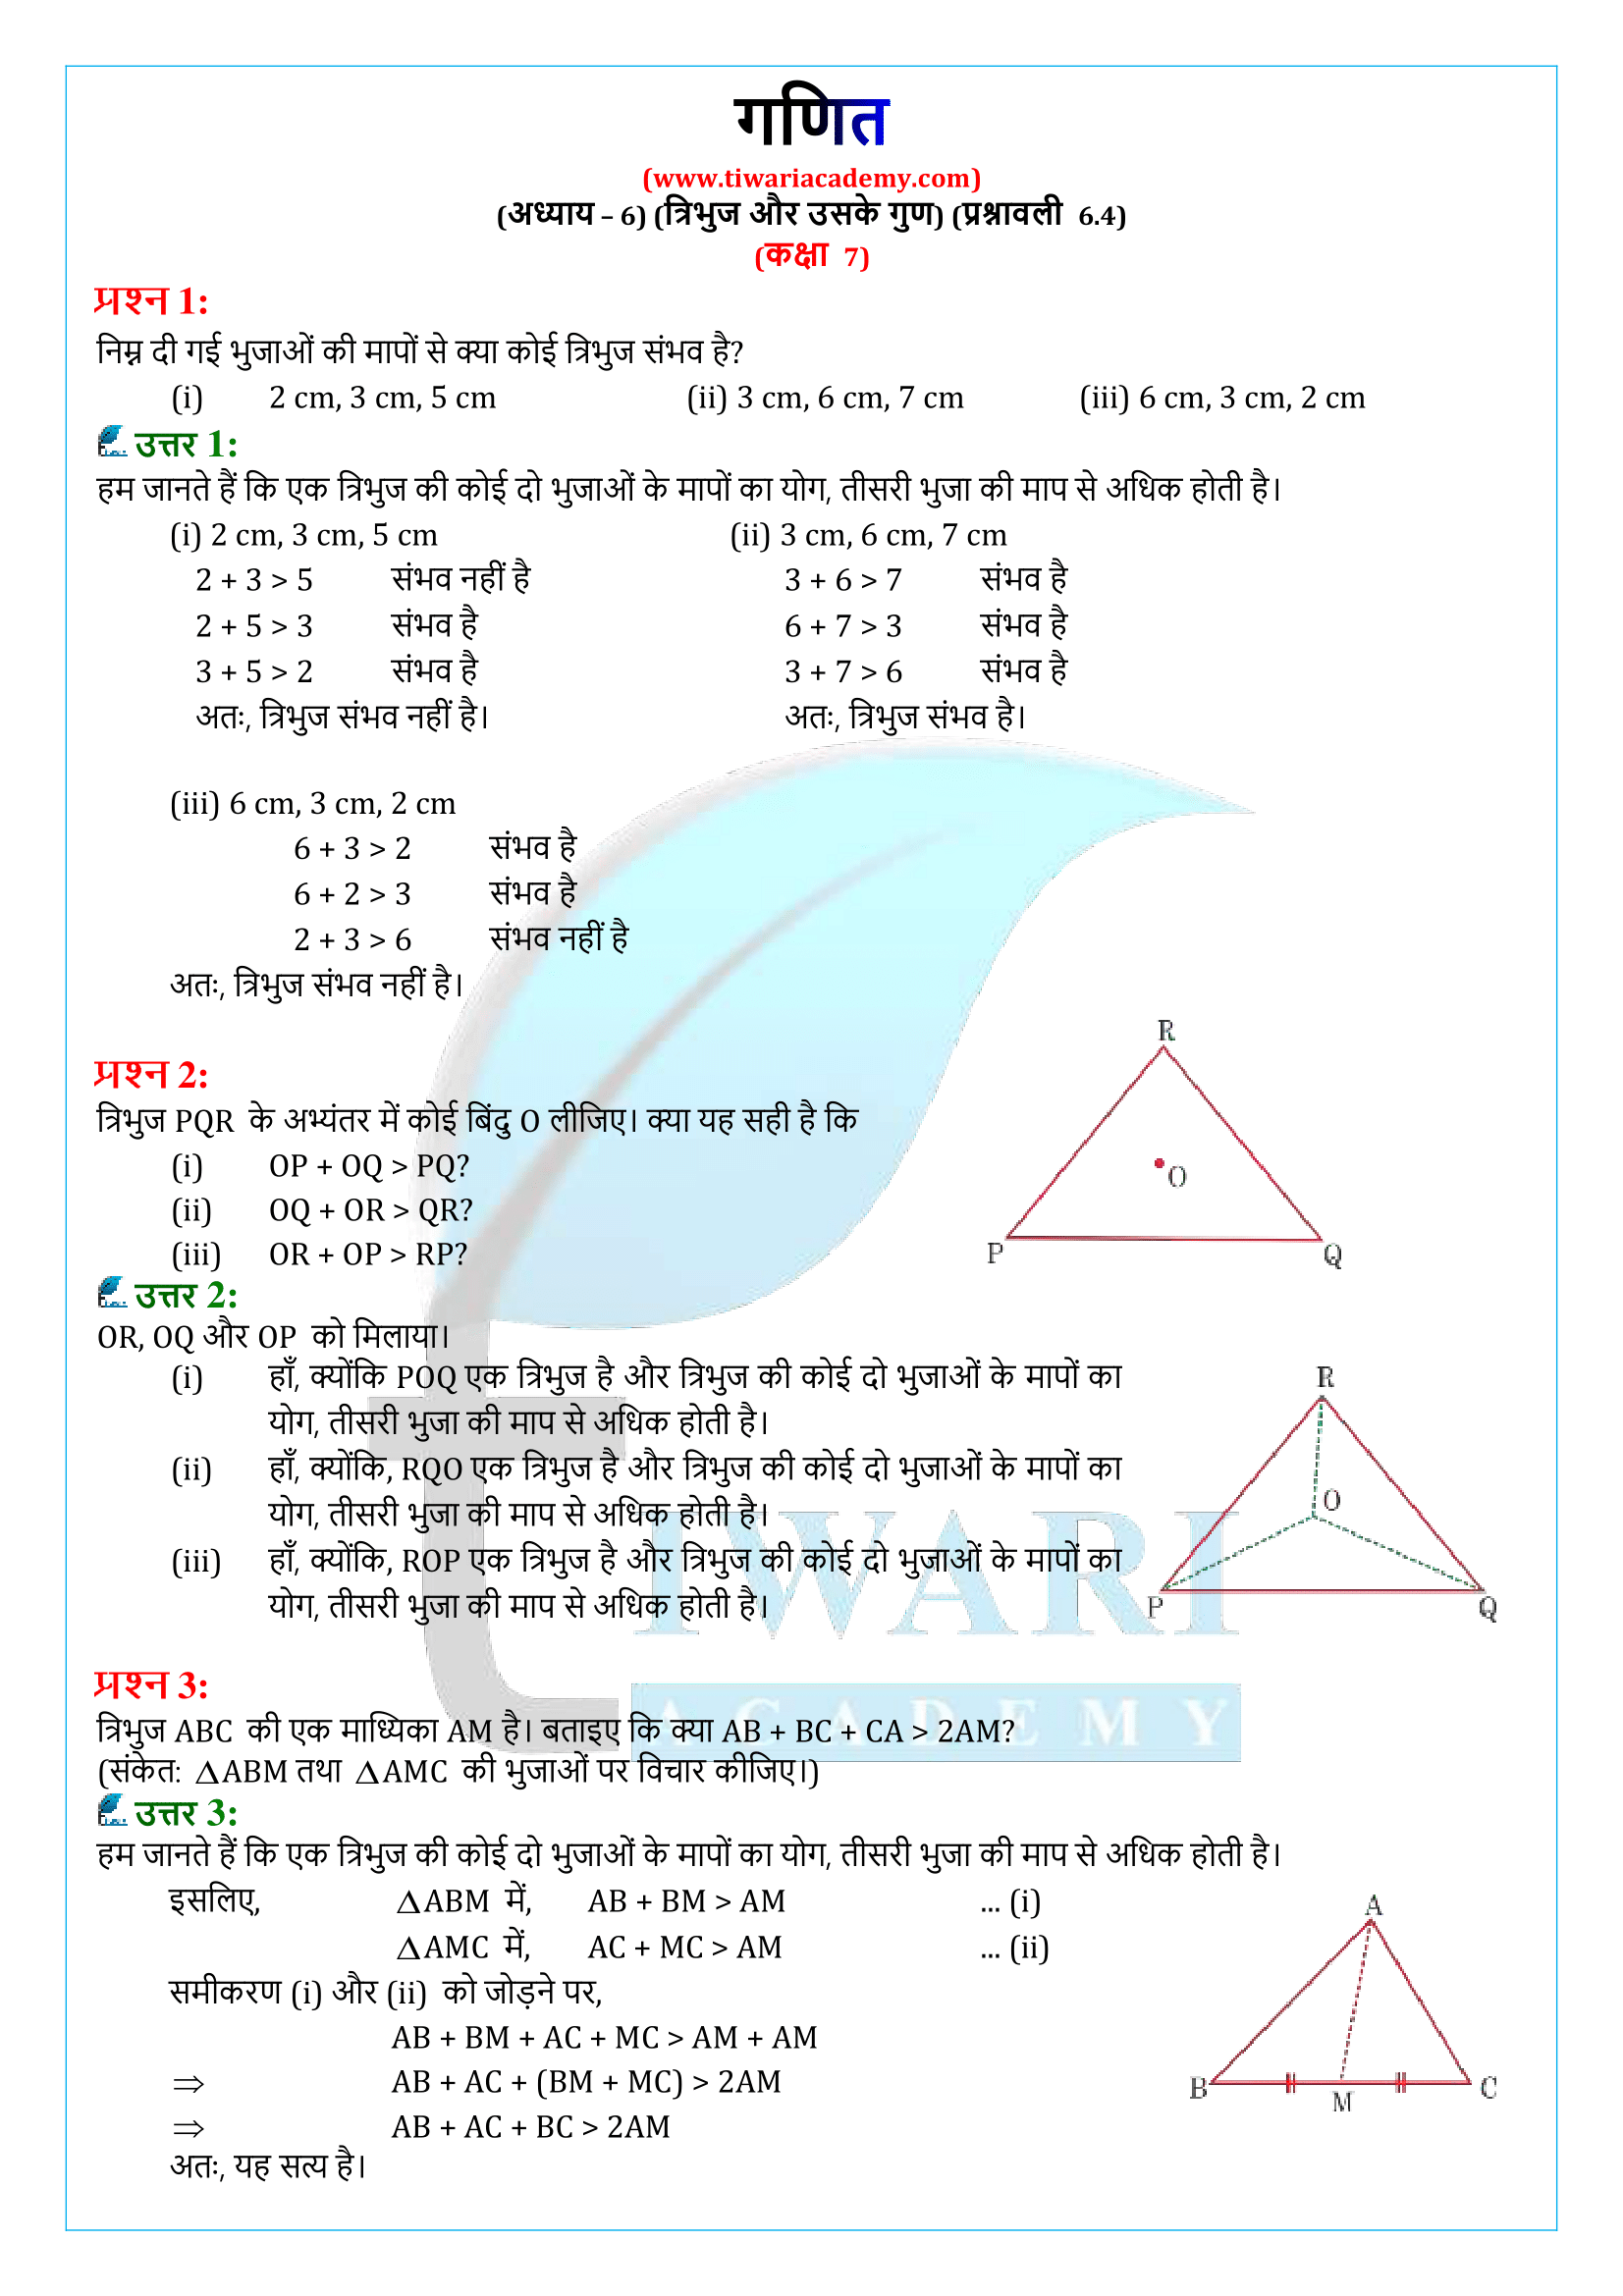 कक्षा 7 गणित प्रश्नावली 6.4 के हल